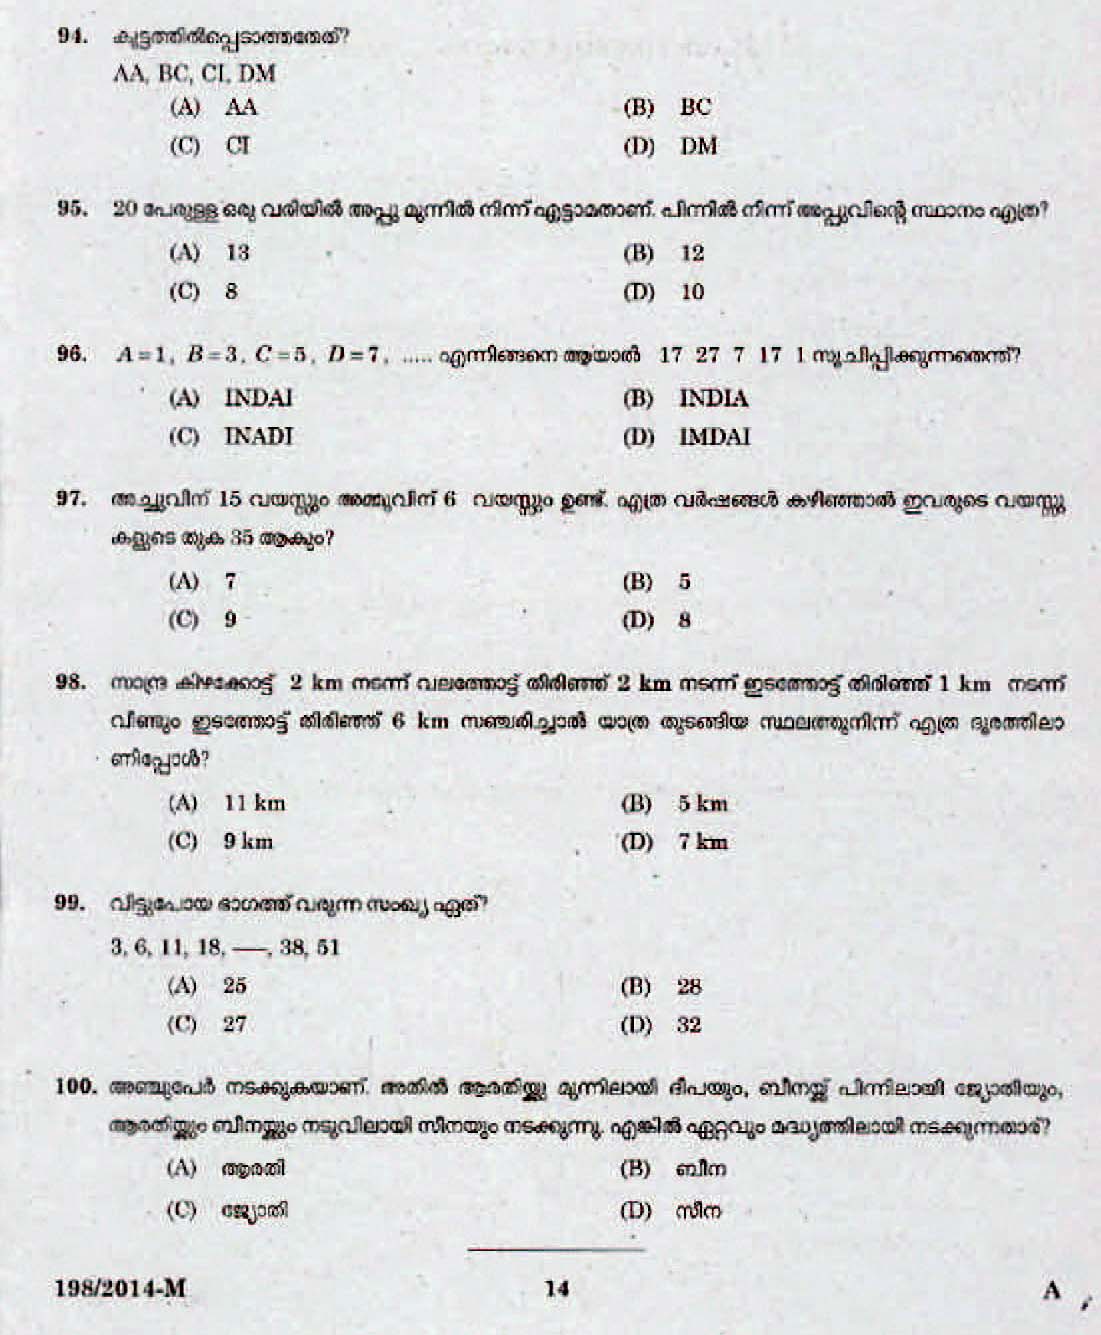 Kerala Last Grade Servants Exam 2014 Question Paper Code 1982014 M 12